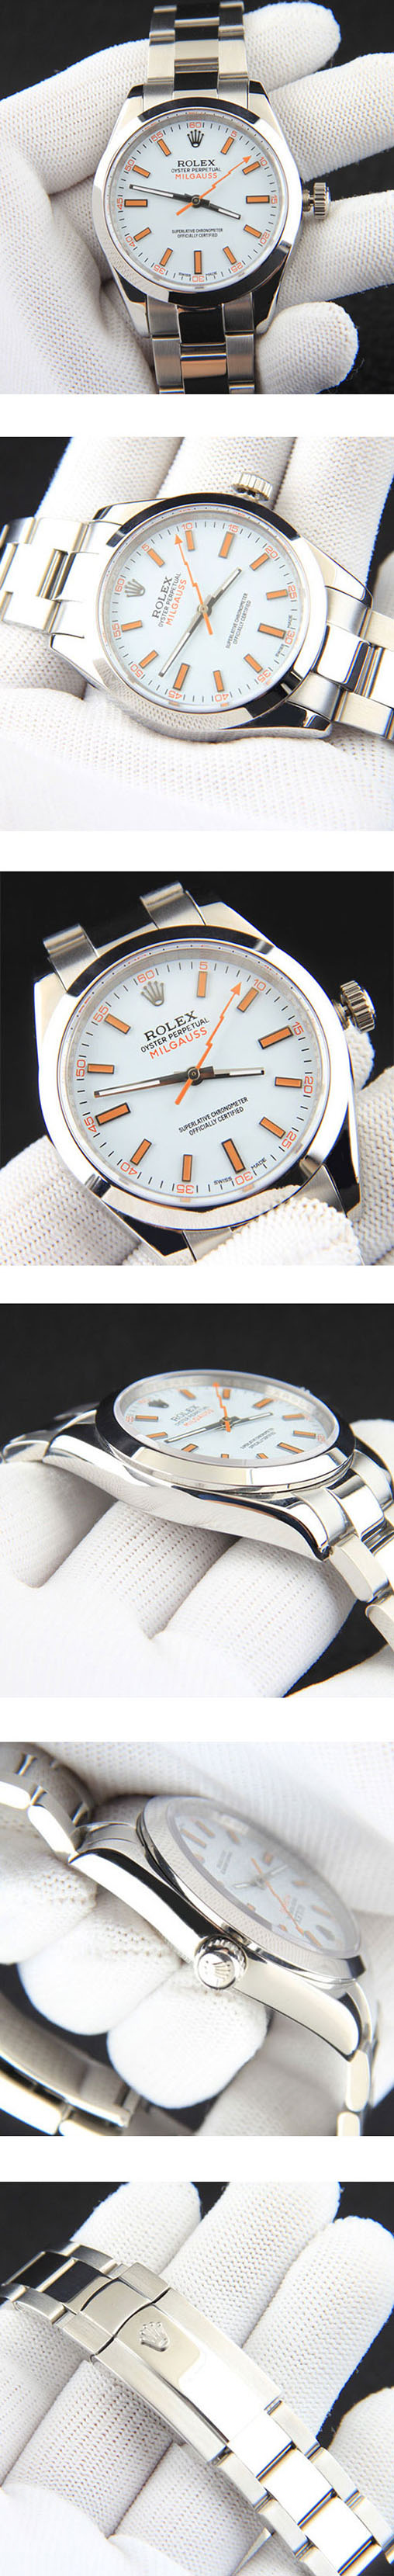 大人気 ロレックス【優良店販促活動中】ミルガウスコピー高級腕時計  116400-0002